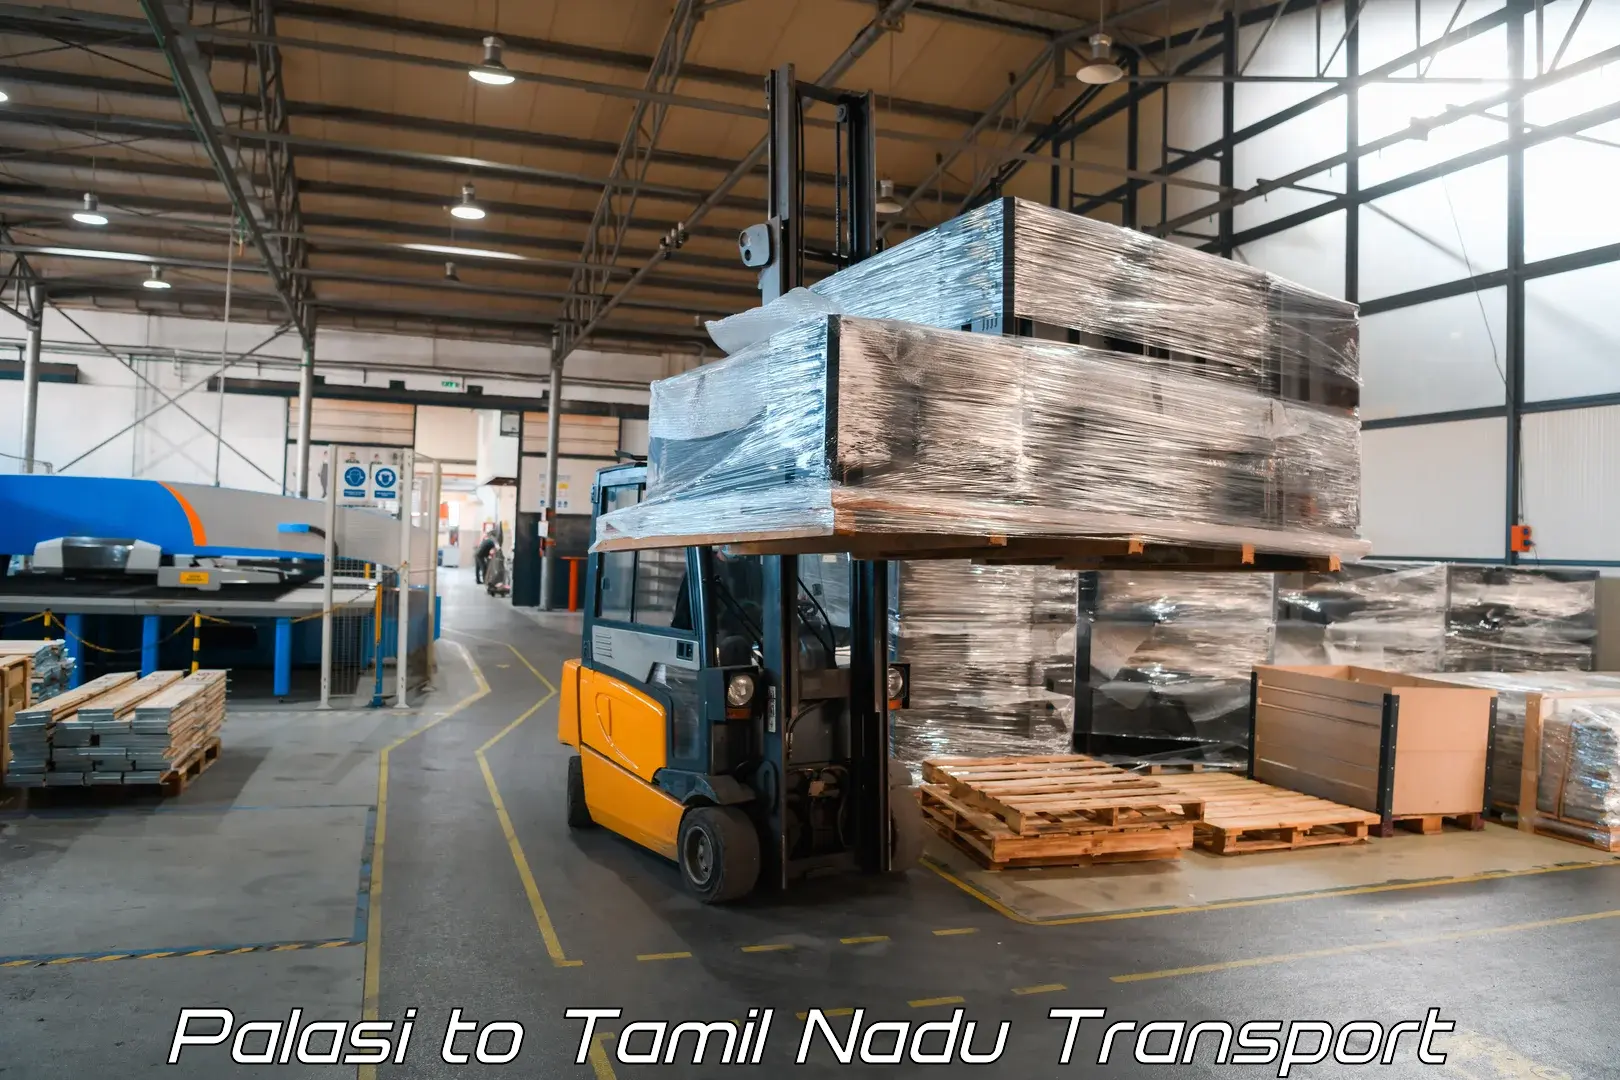 Online transport booking Palasi to Tamil Nadu